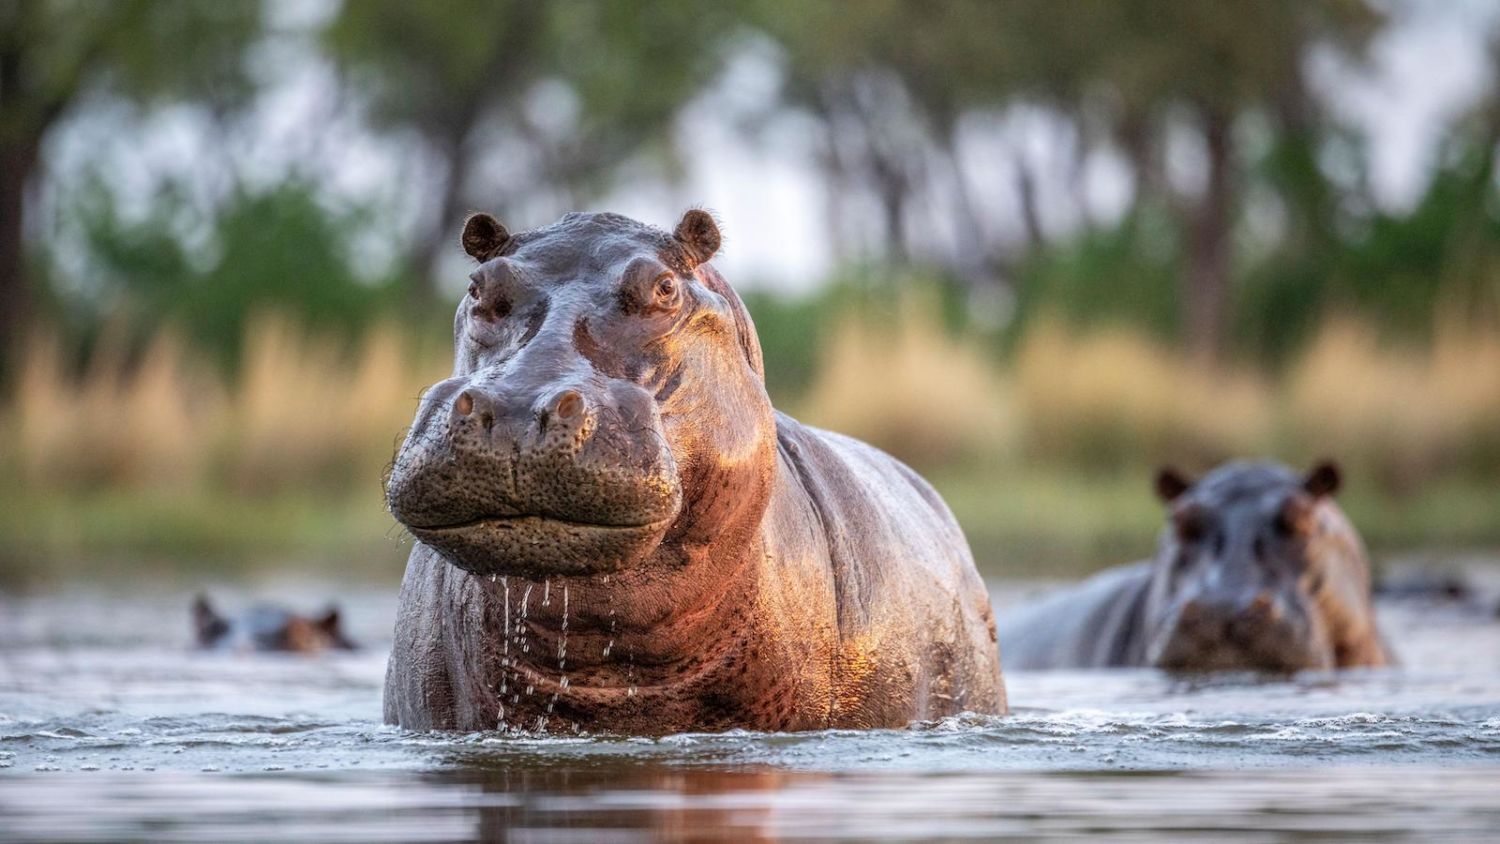 Hippo - Random Facts